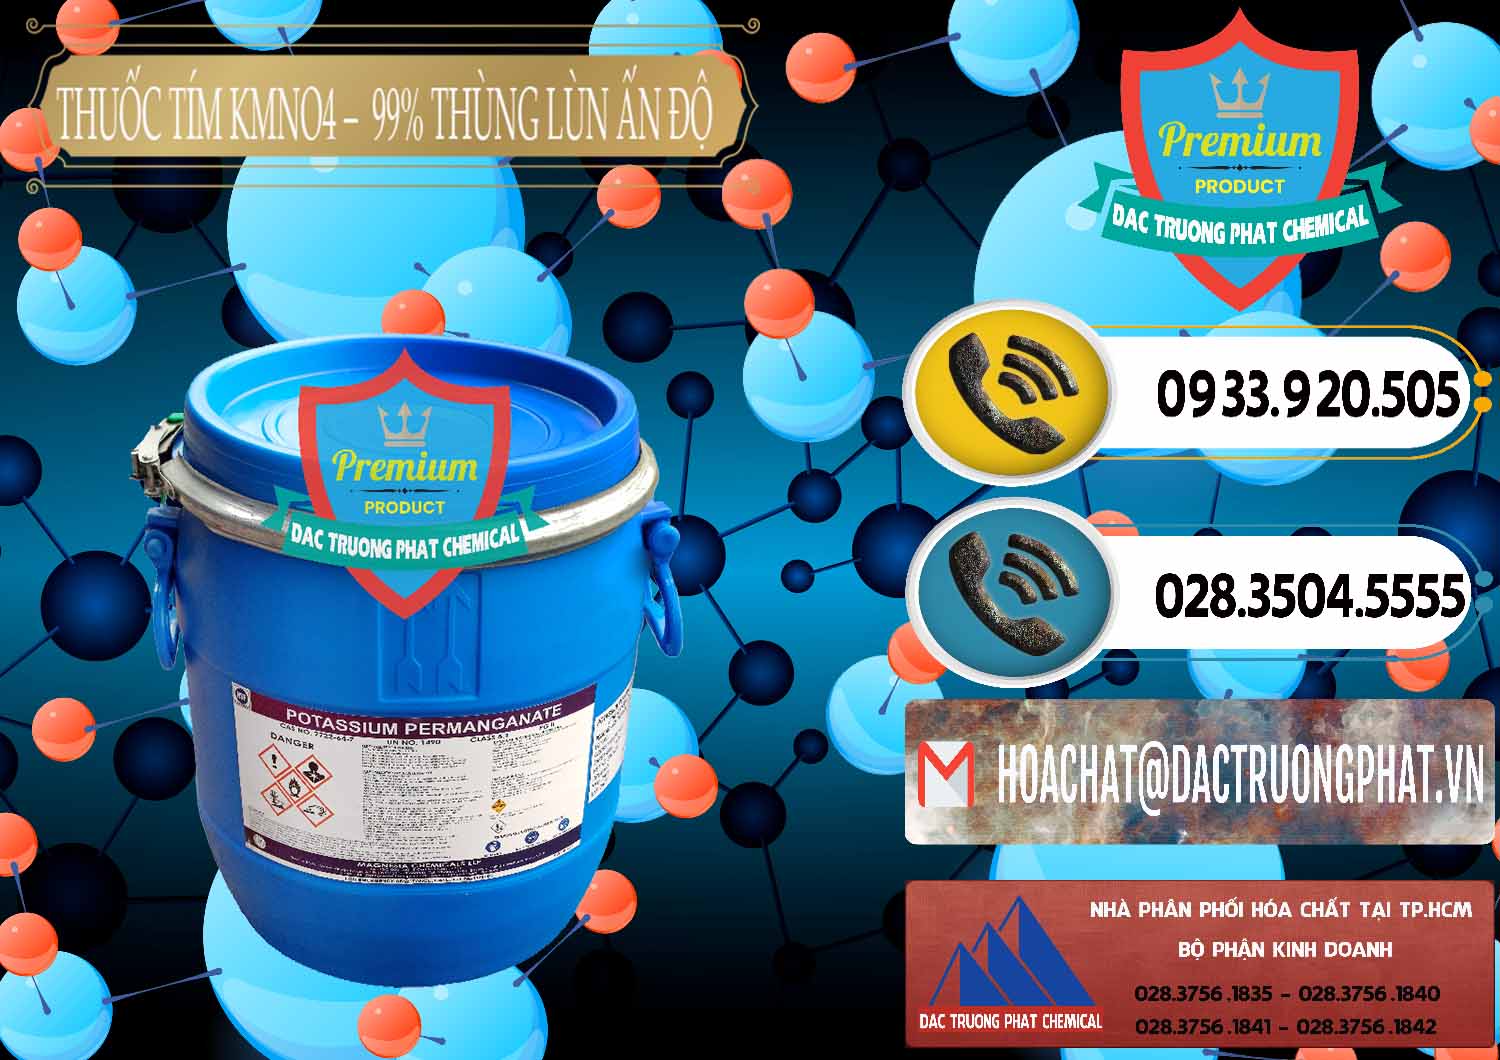 Đơn vị kinh doanh và bán Thuốc Tím - KMNO4 Thùng Lùn 99% Magnesia Chemicals Ấn Độ India - 0165 - Nhà phân phối _ kinh doanh hóa chất tại TP.HCM - hoachatdetnhuom.vn